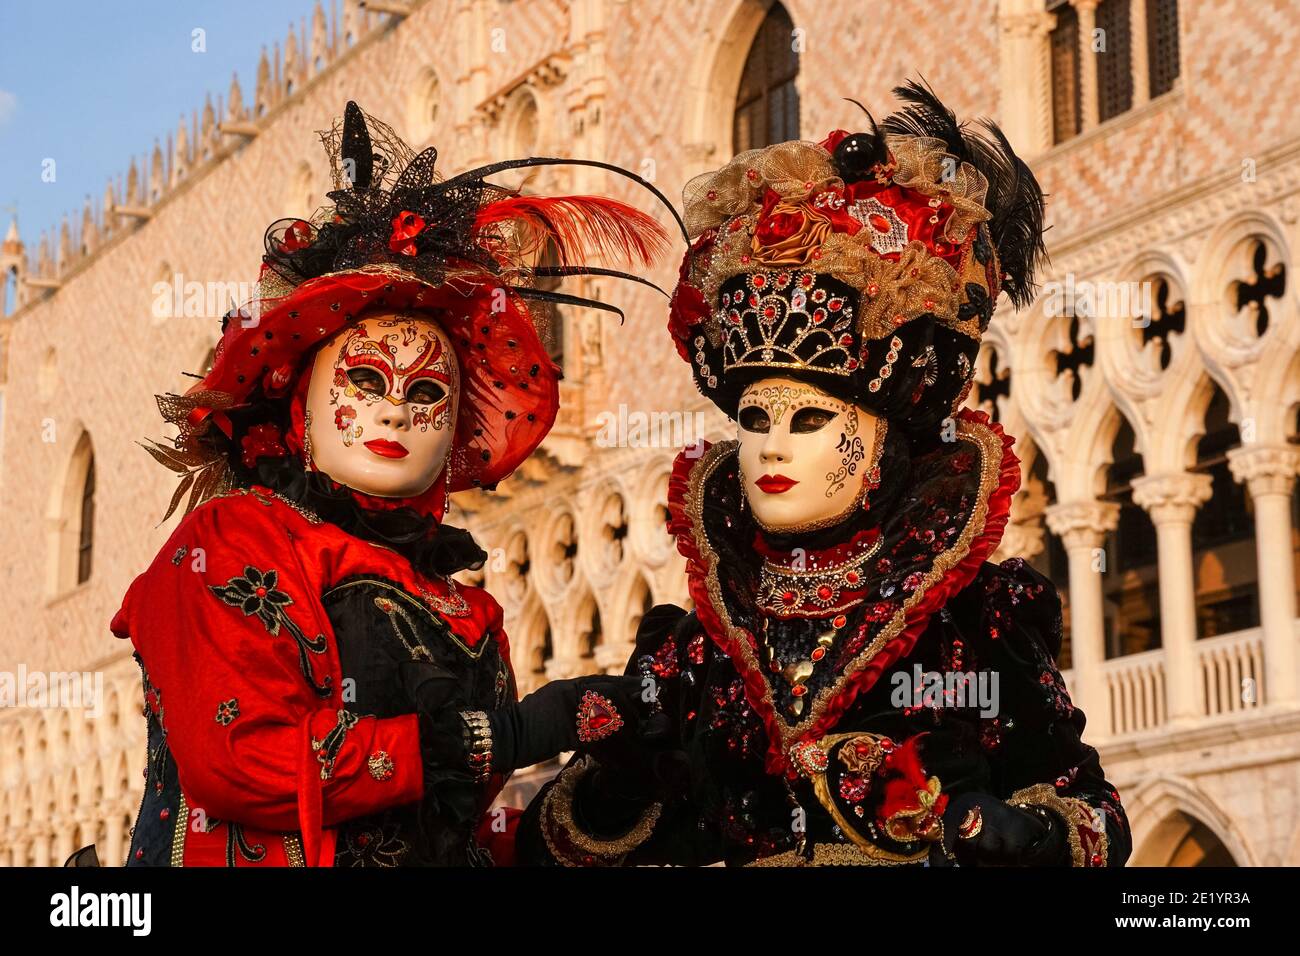 Zwei Frauen in traditionell dekorierten Kostümen und Masken vor dem Dogenpalast während des Karnevals in Venedig, Italien Stockfoto